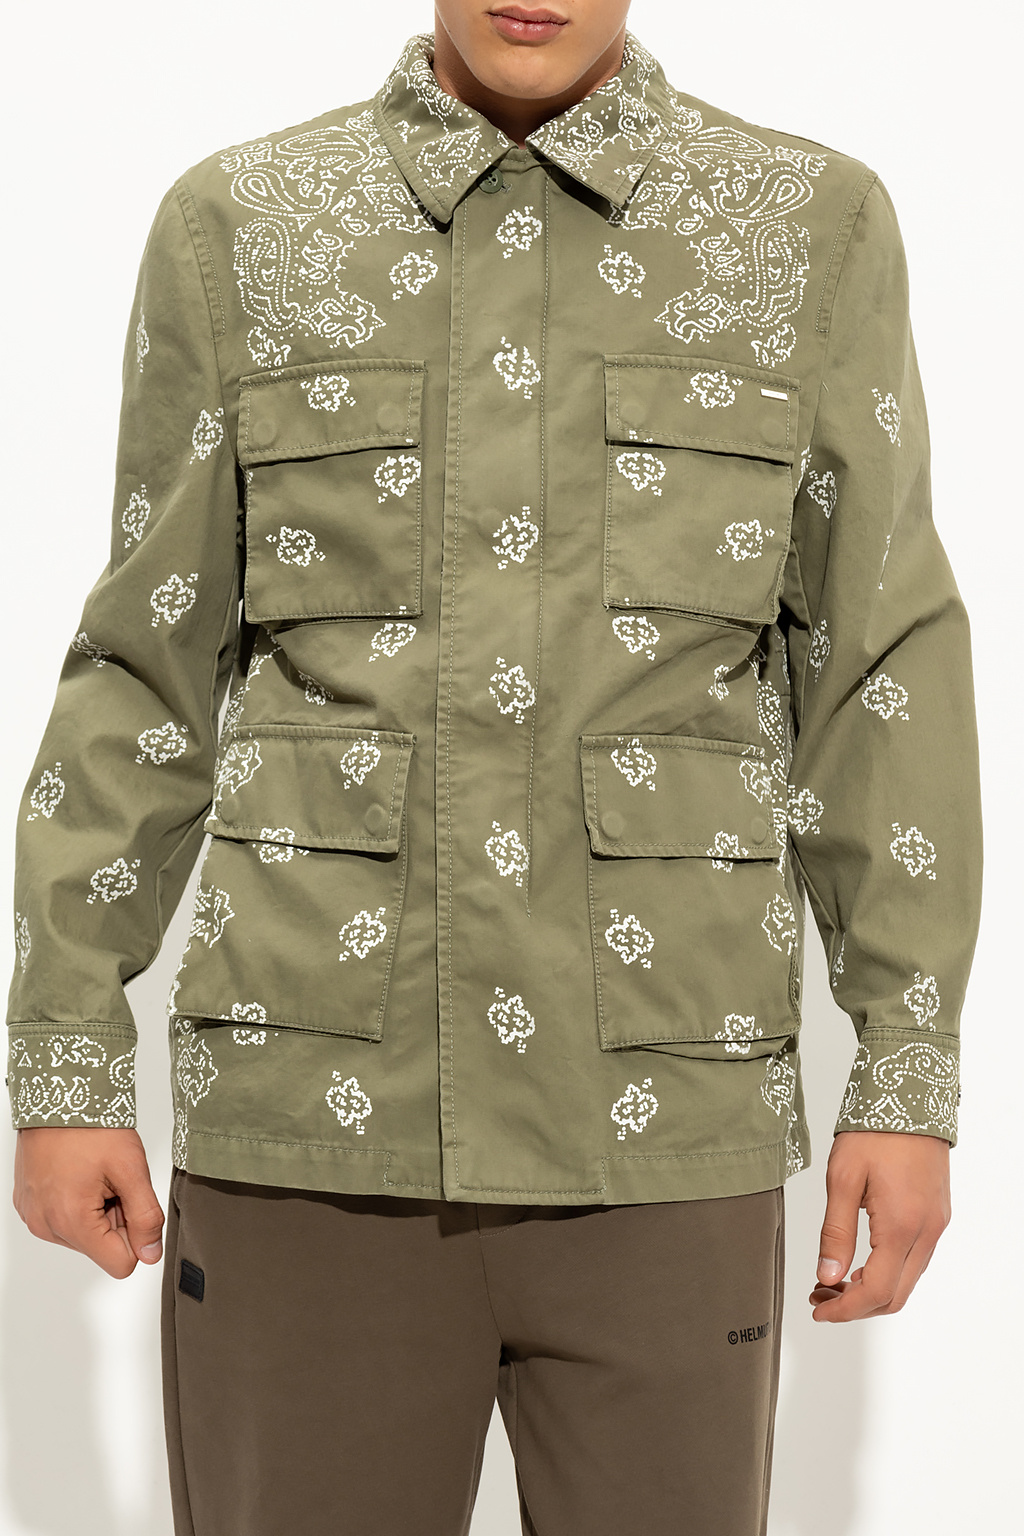 Amiri Patterned jacket